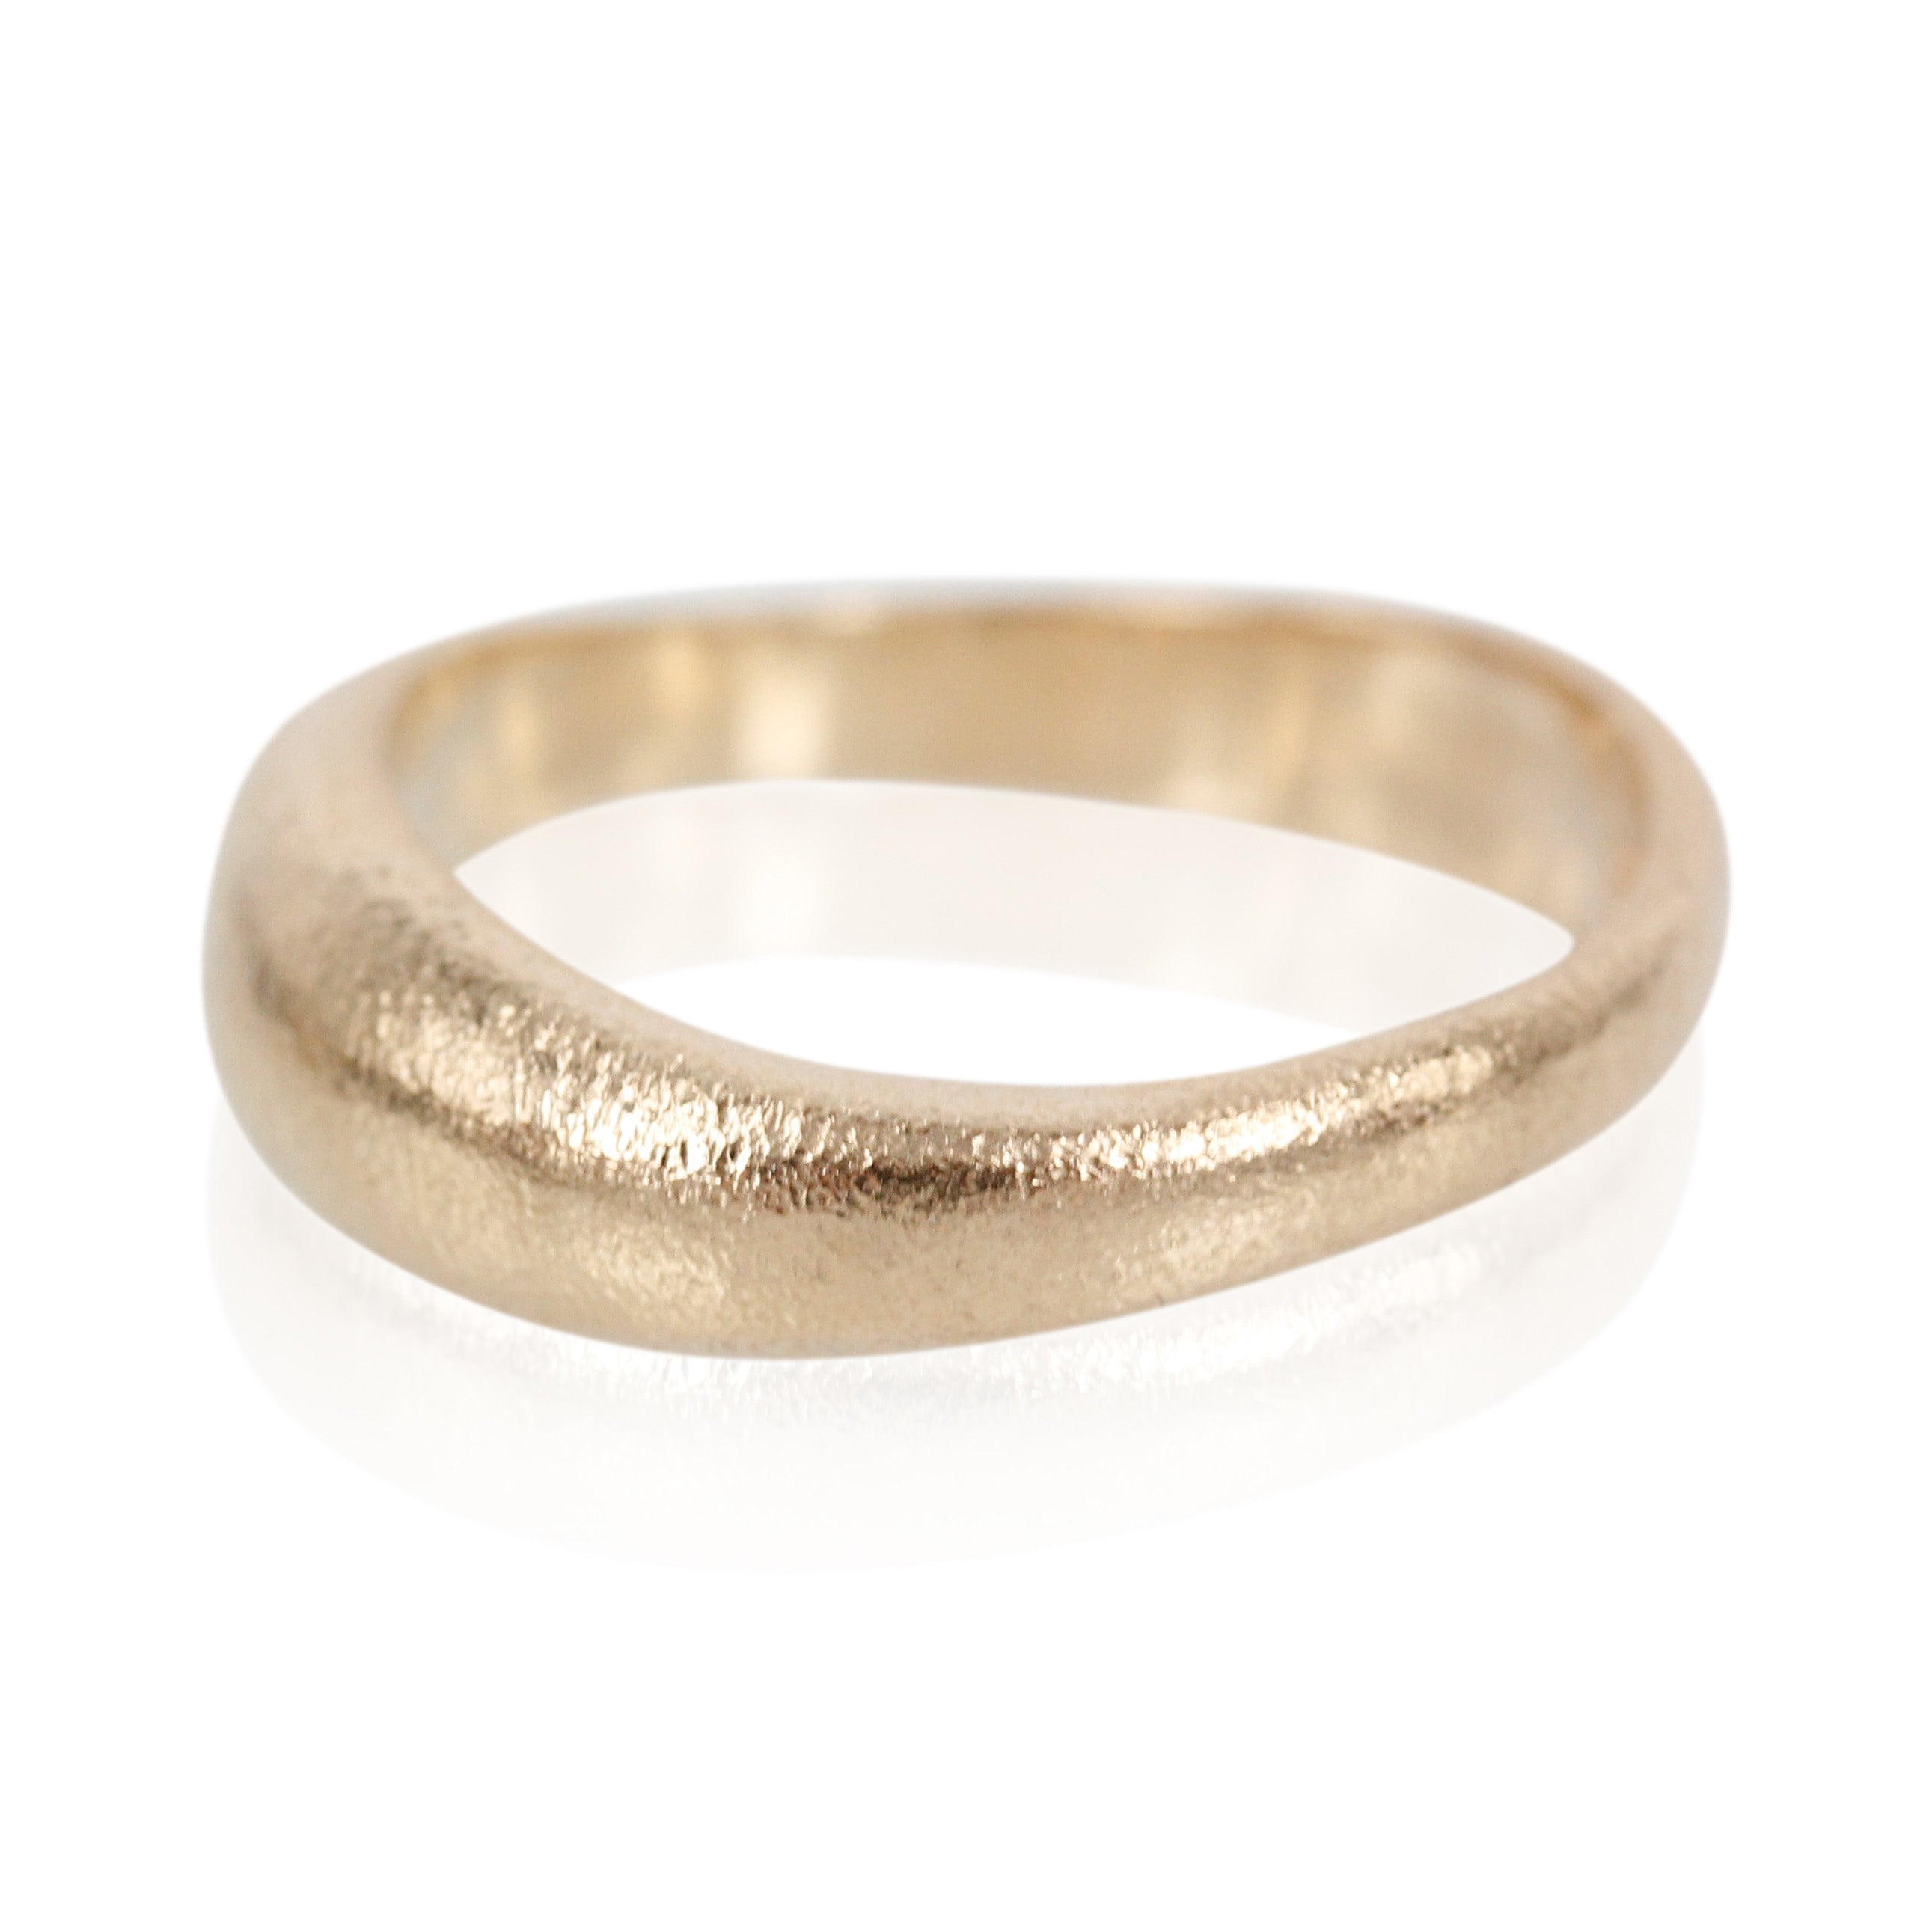 3, Smuk organisk ring, men helt bløde former og smukke hvælvinger, der kan isættes diamanter i ringen efter ønske